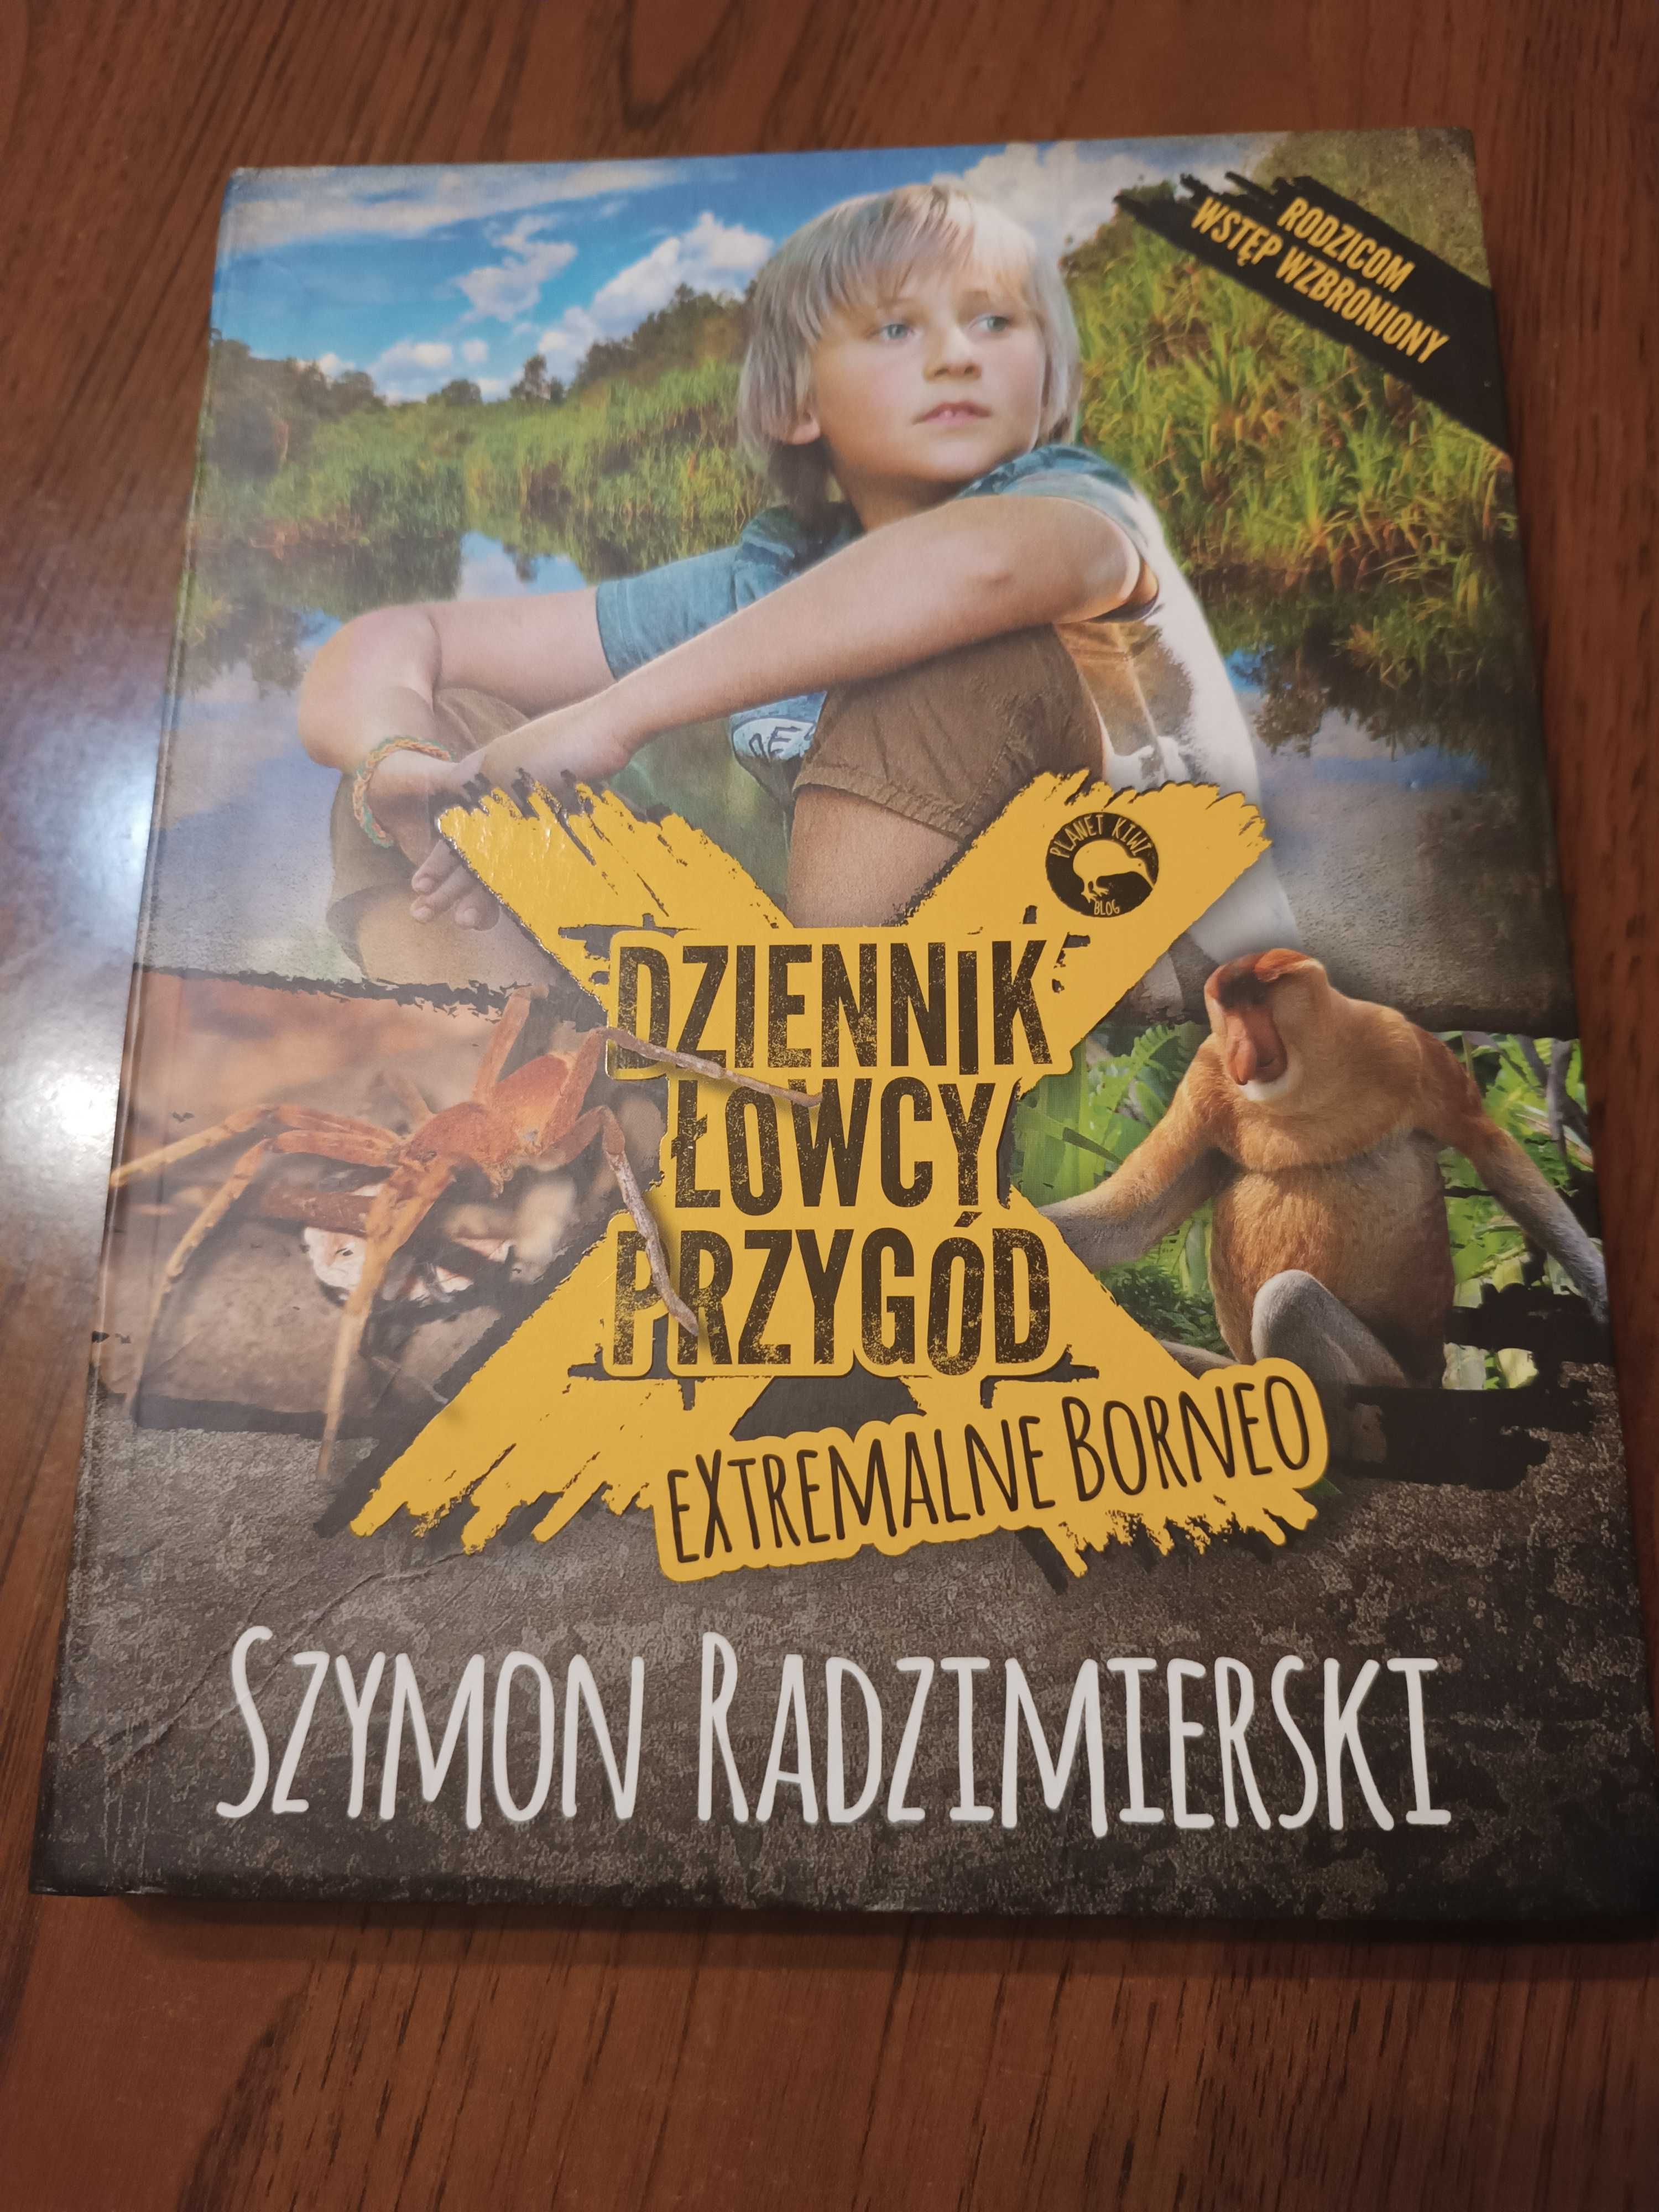 Książka "Dziennik Łowcy Przygód Extremalne Borneo" Szymon Radzimierski